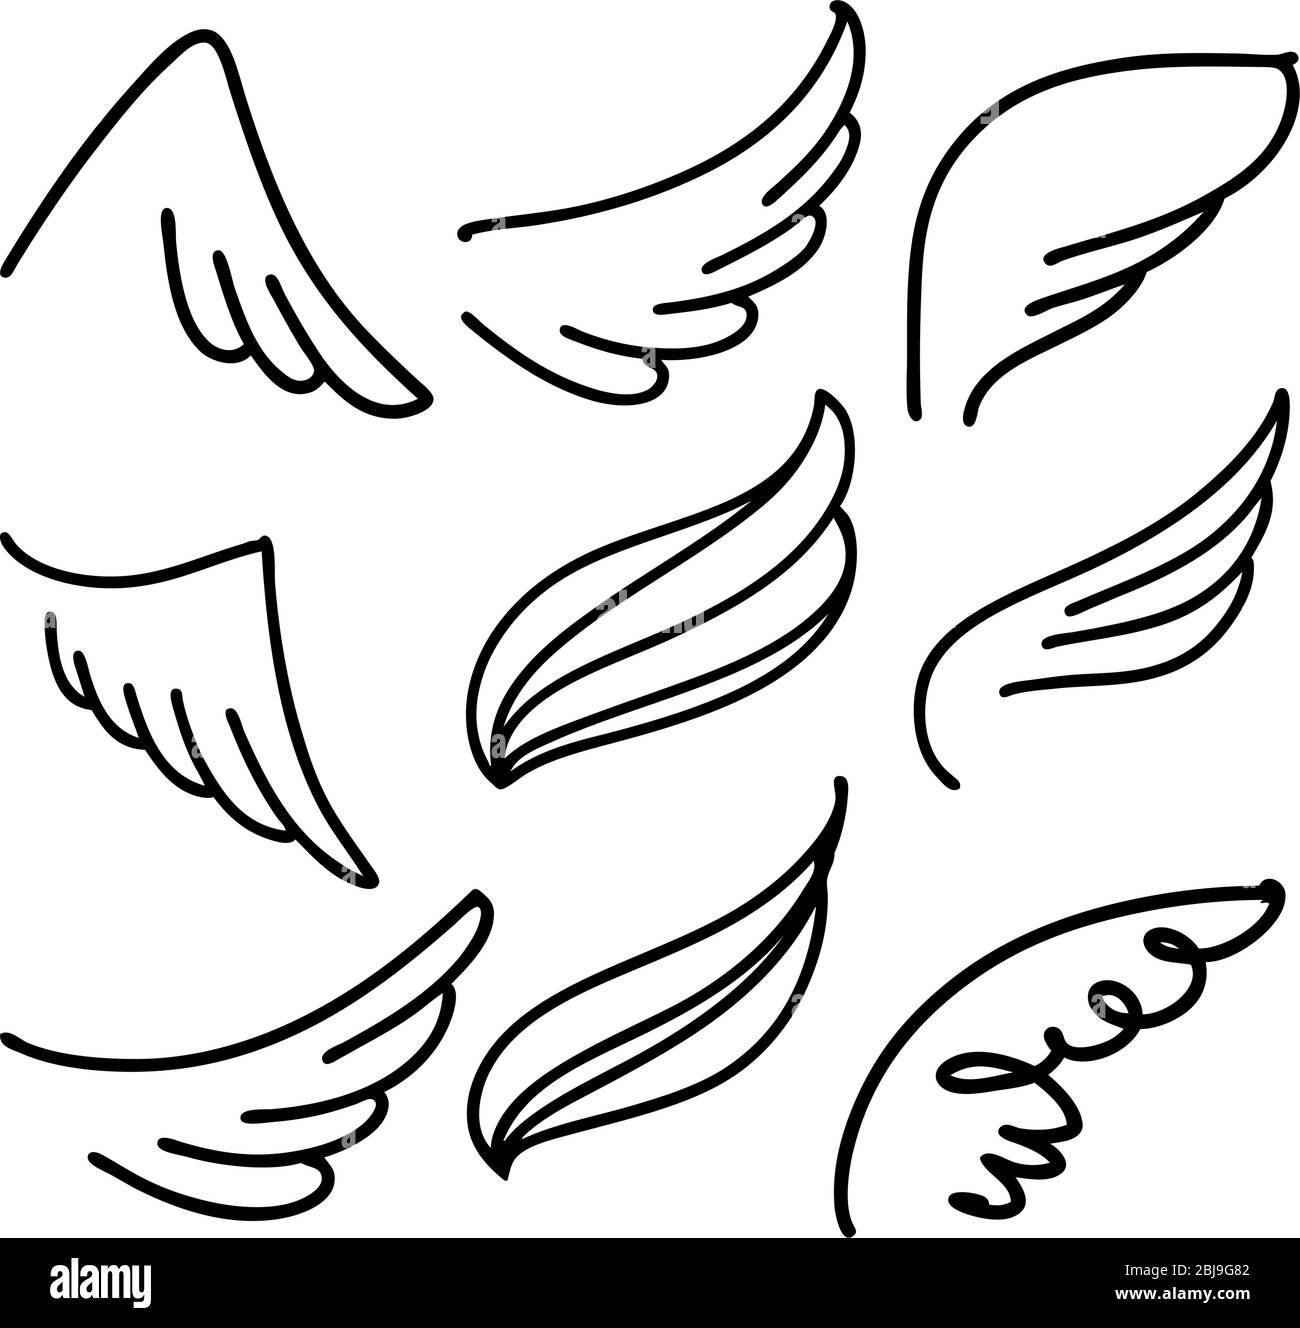 Angel Wings Icon set sketch, stylisé collection d'ailes d'oiseaux dessin animé à la main illustration vectorielle. Illustration de Vecteur